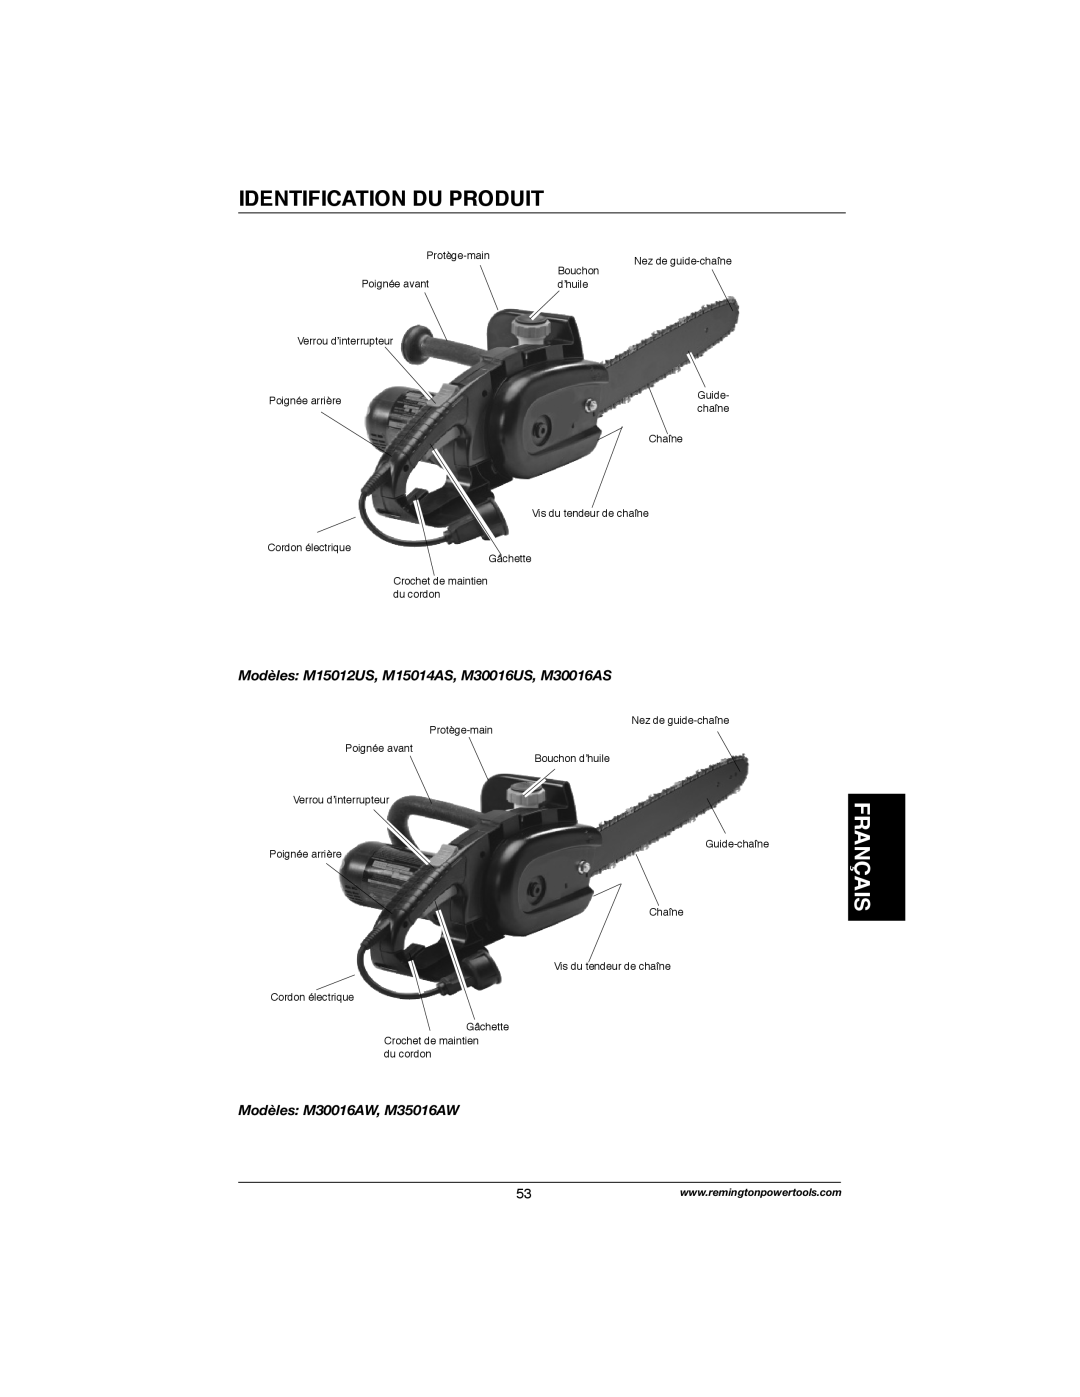 Remington Power Tools M30016AW Identification Du Produit, Français, Modèles M15012US, M15014AS, M30016US, M30016AS 